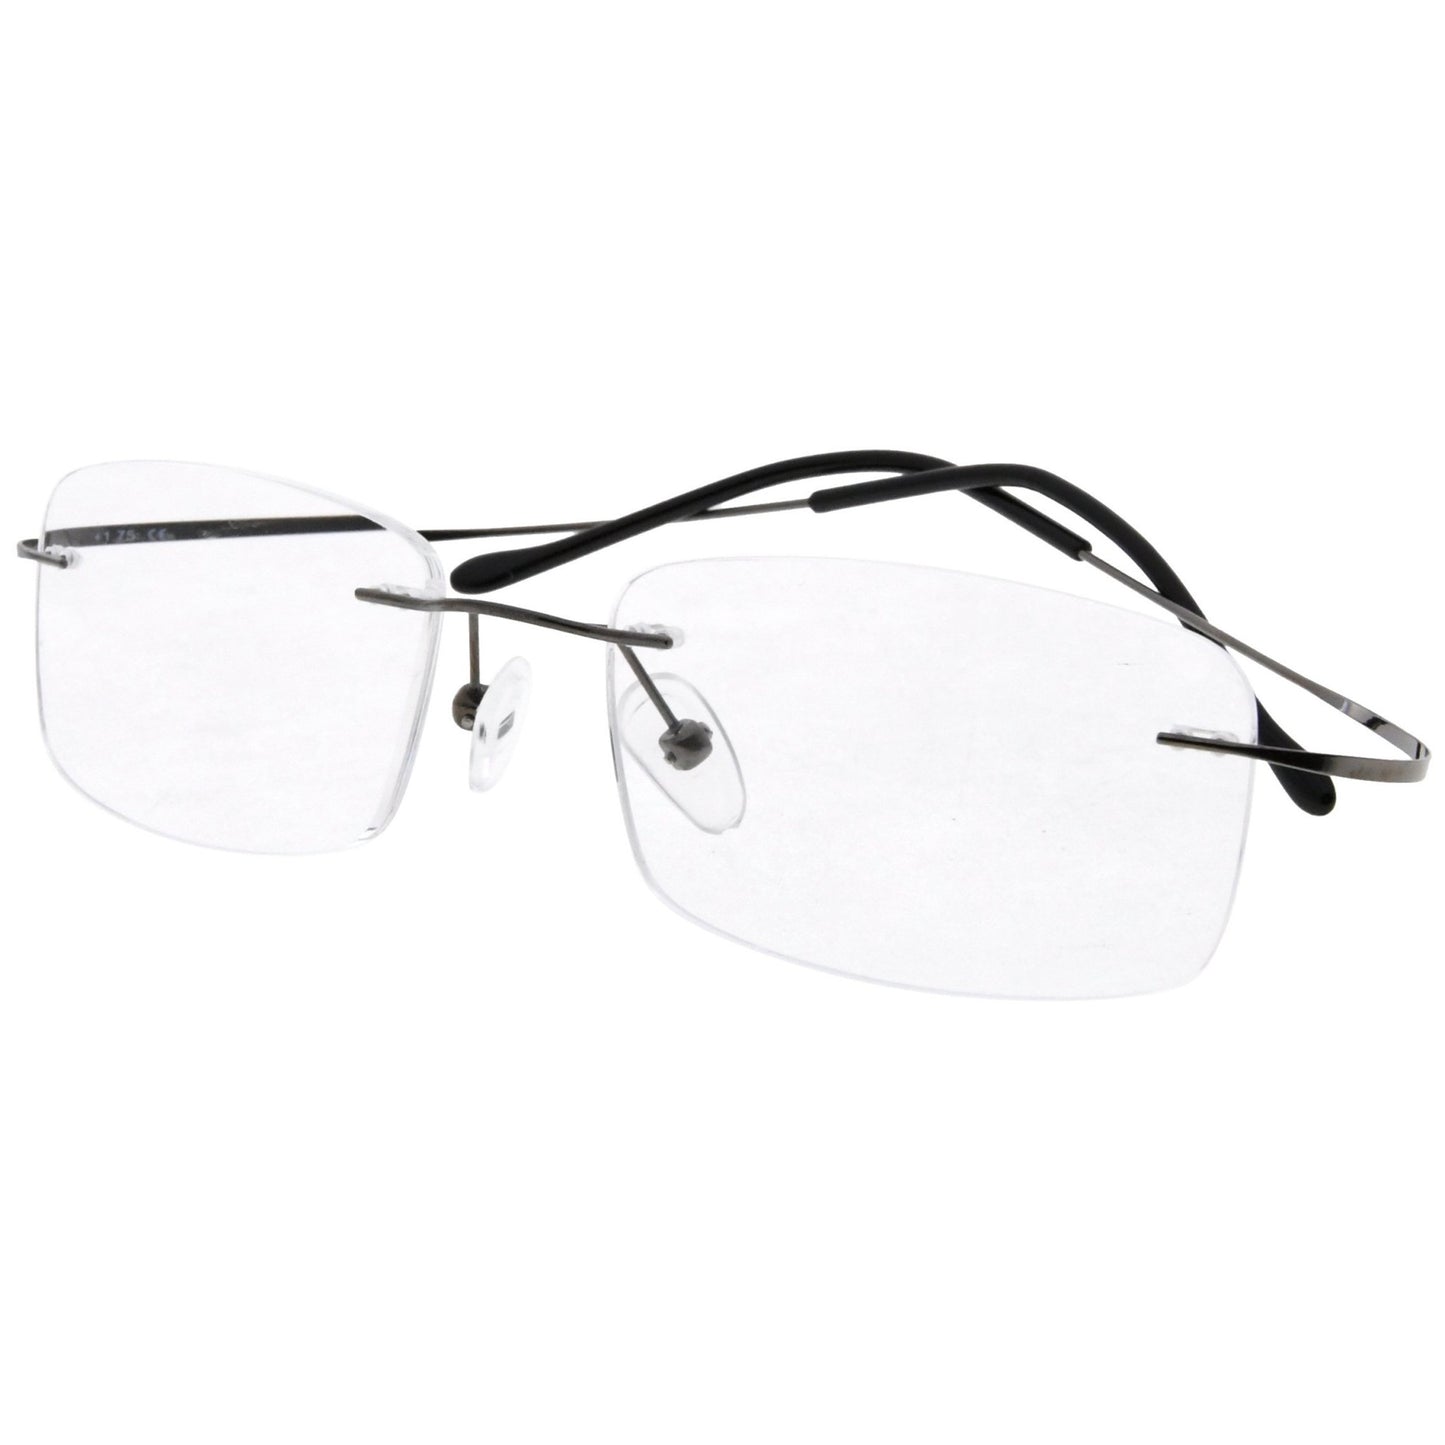 Titanium Rimless Reading Glasses Readers R1508